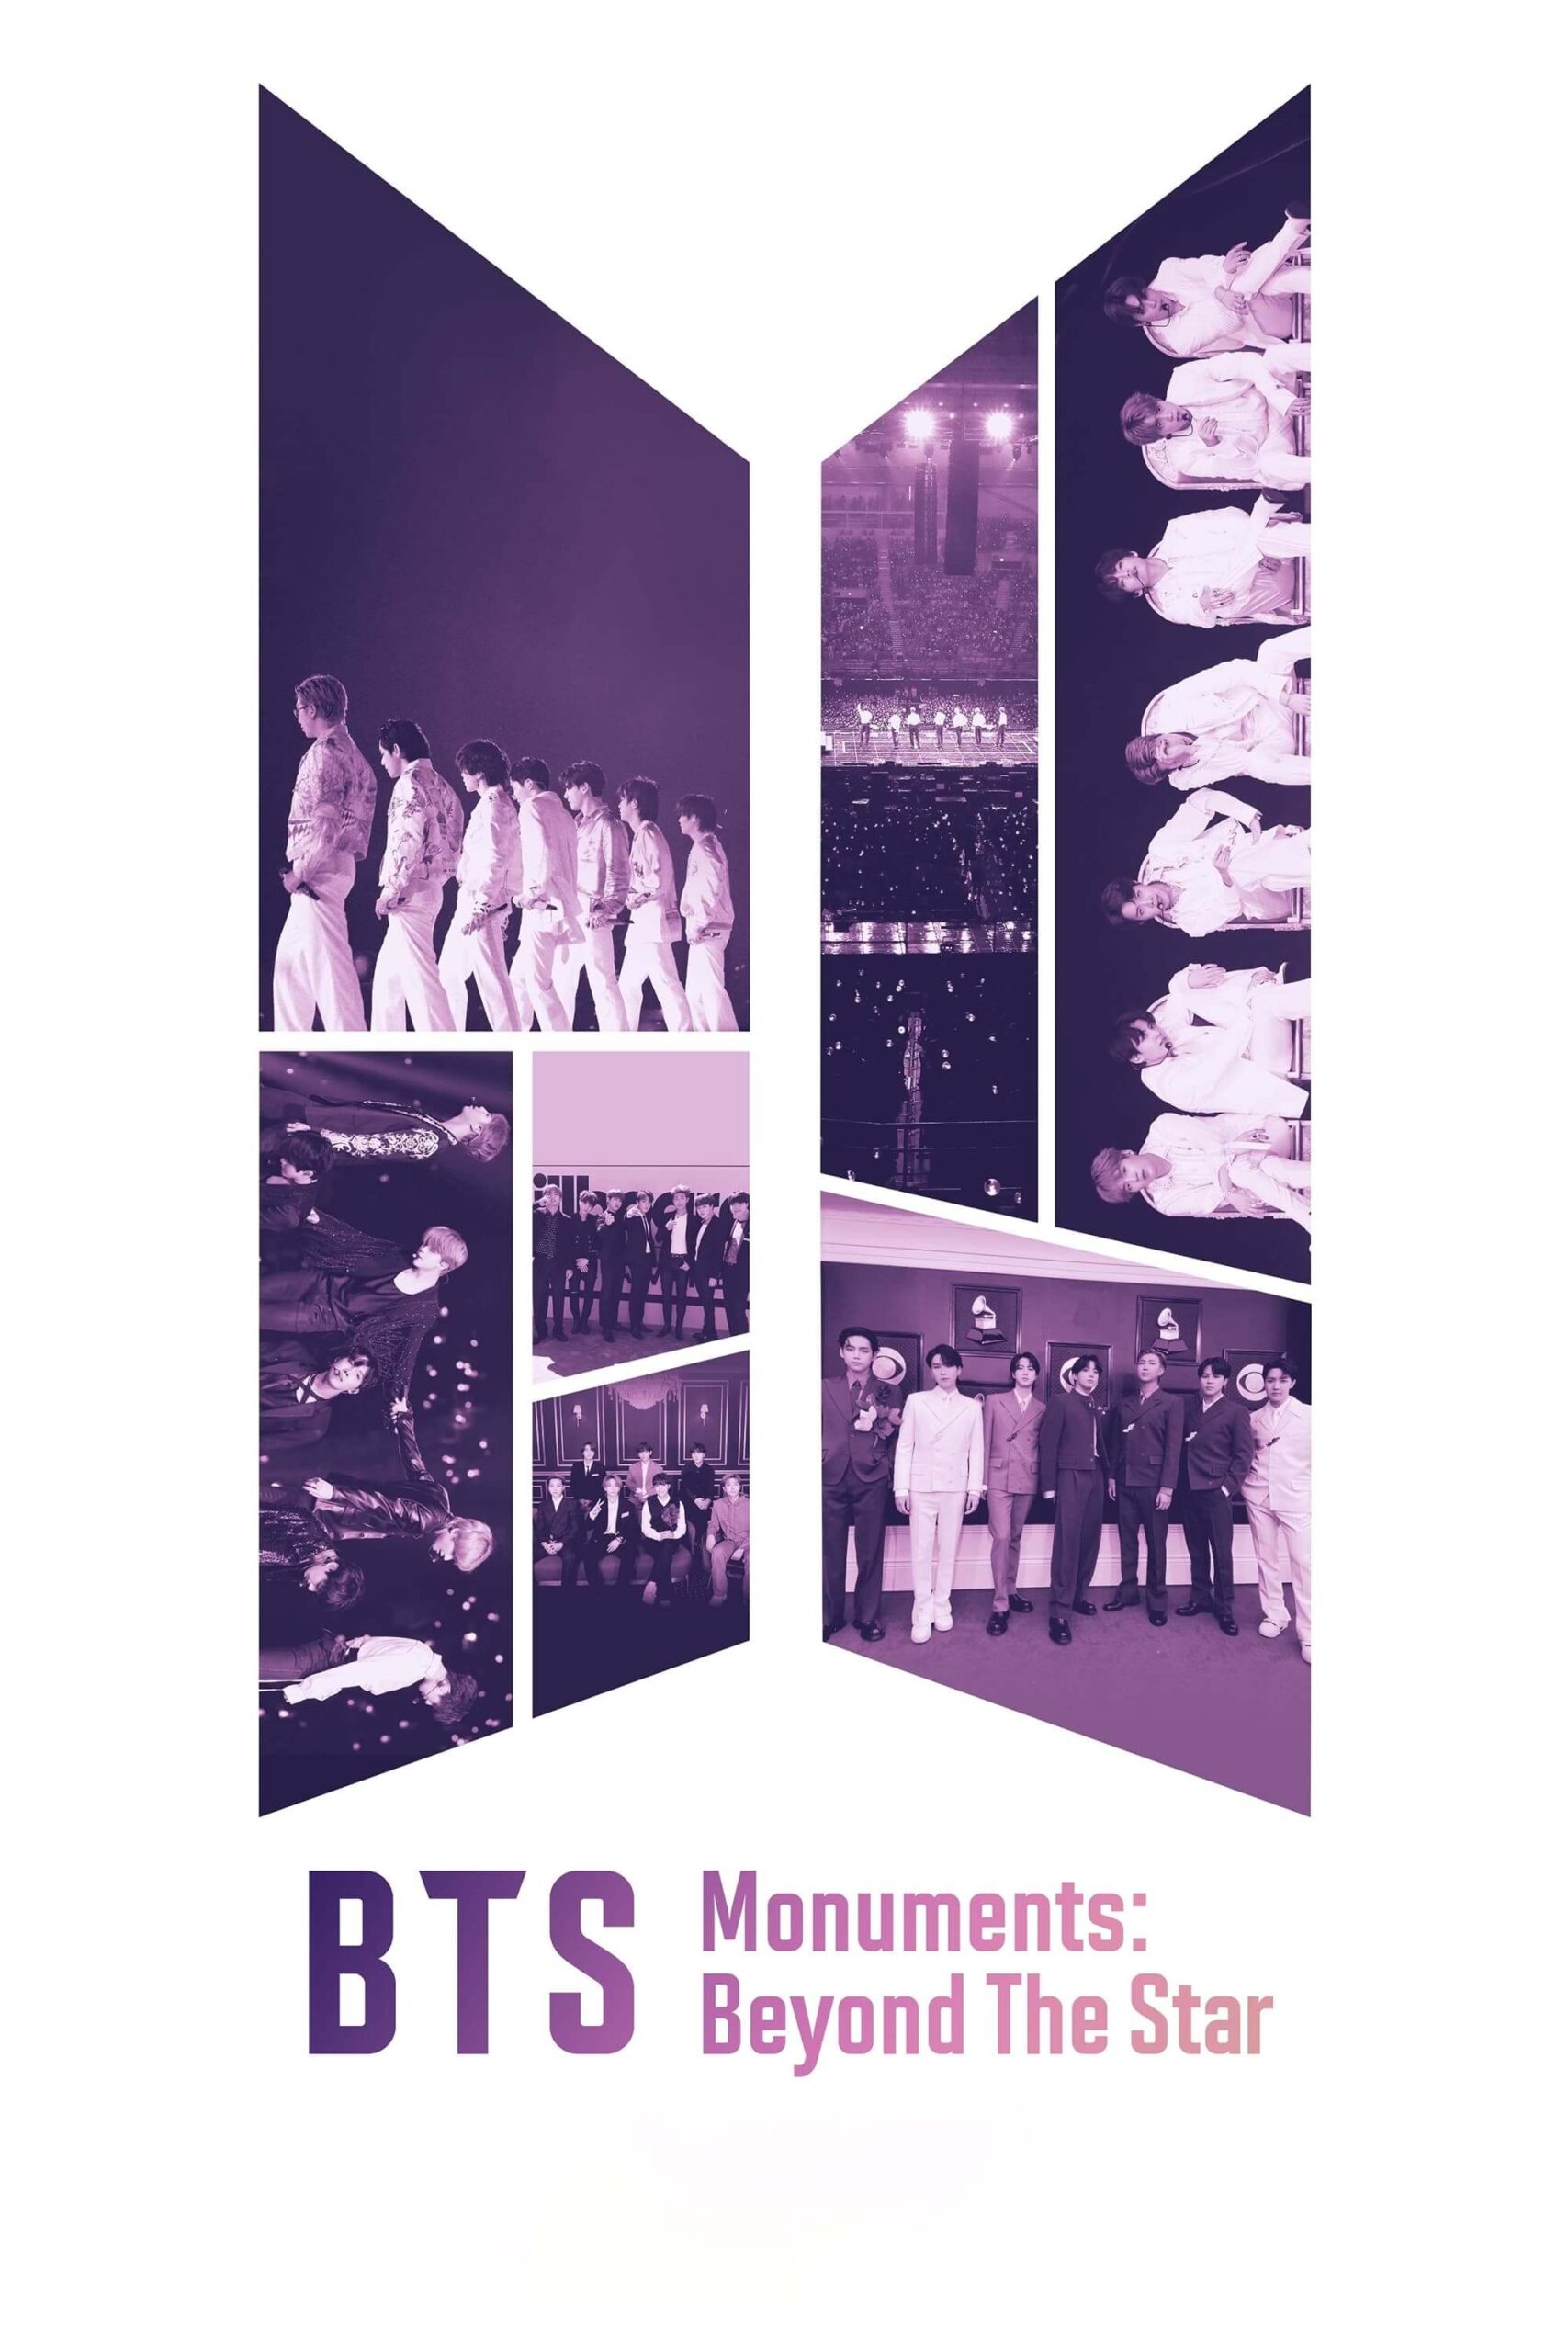 یادگار بی تی اس ورای یک ستاره (BTS Monuments: Beyond the Star)